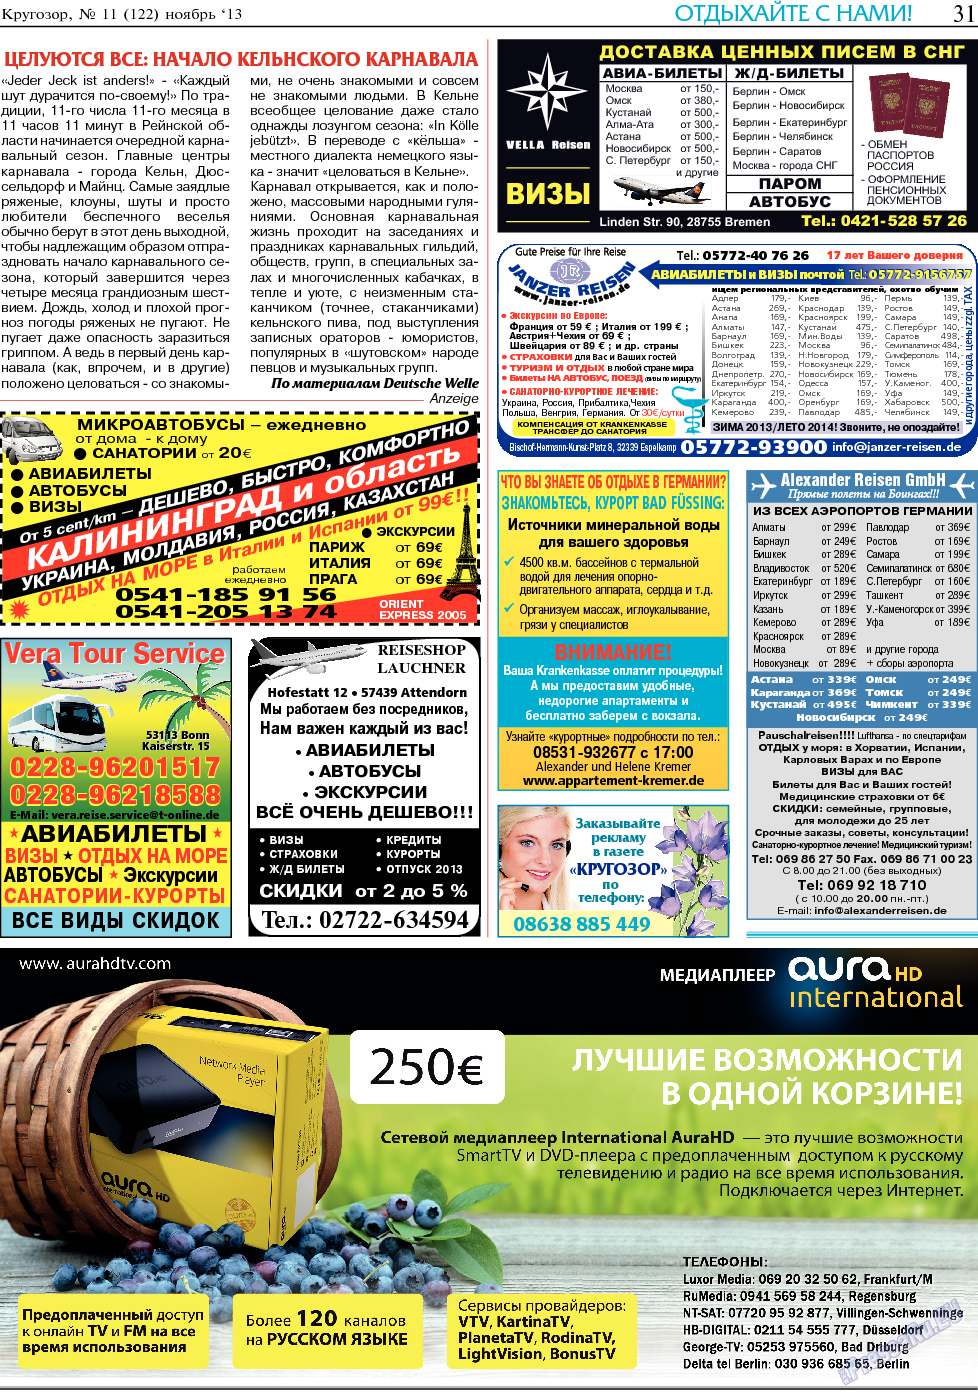 Кругозор (газета). 2013 год, номер 11, стр. 31